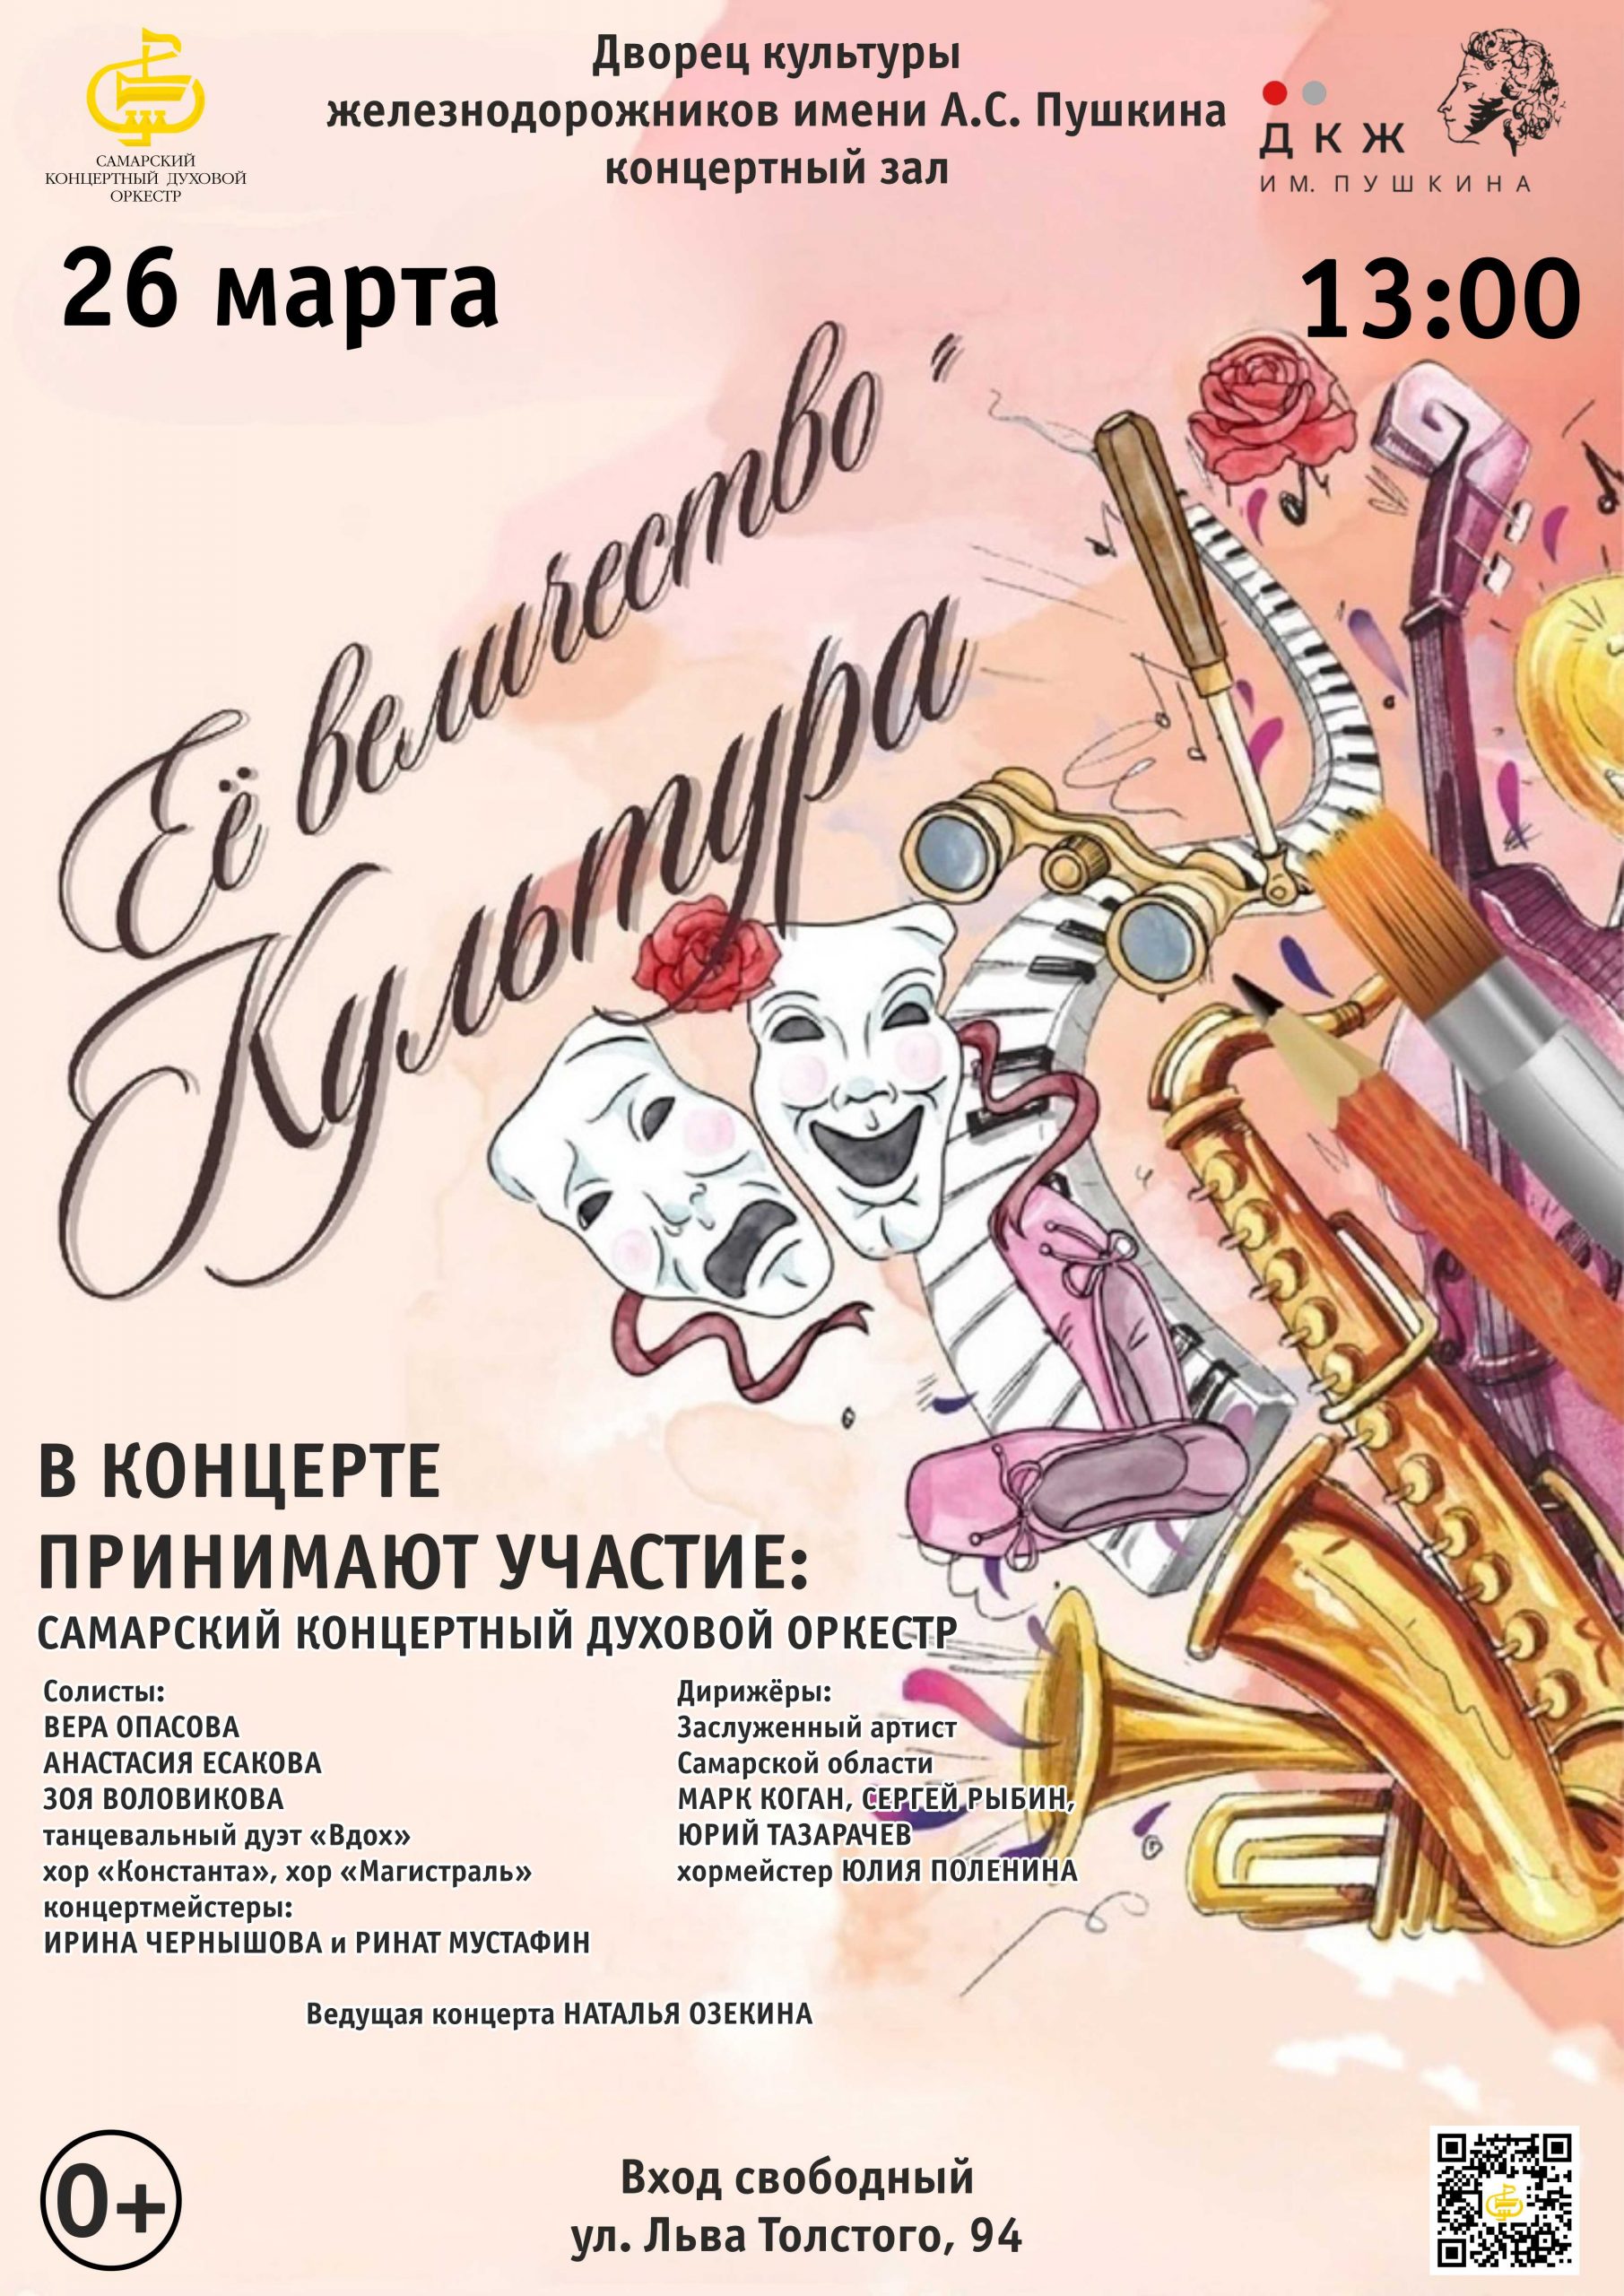 Сценарий парада духовых оркестров регионального фестиваля